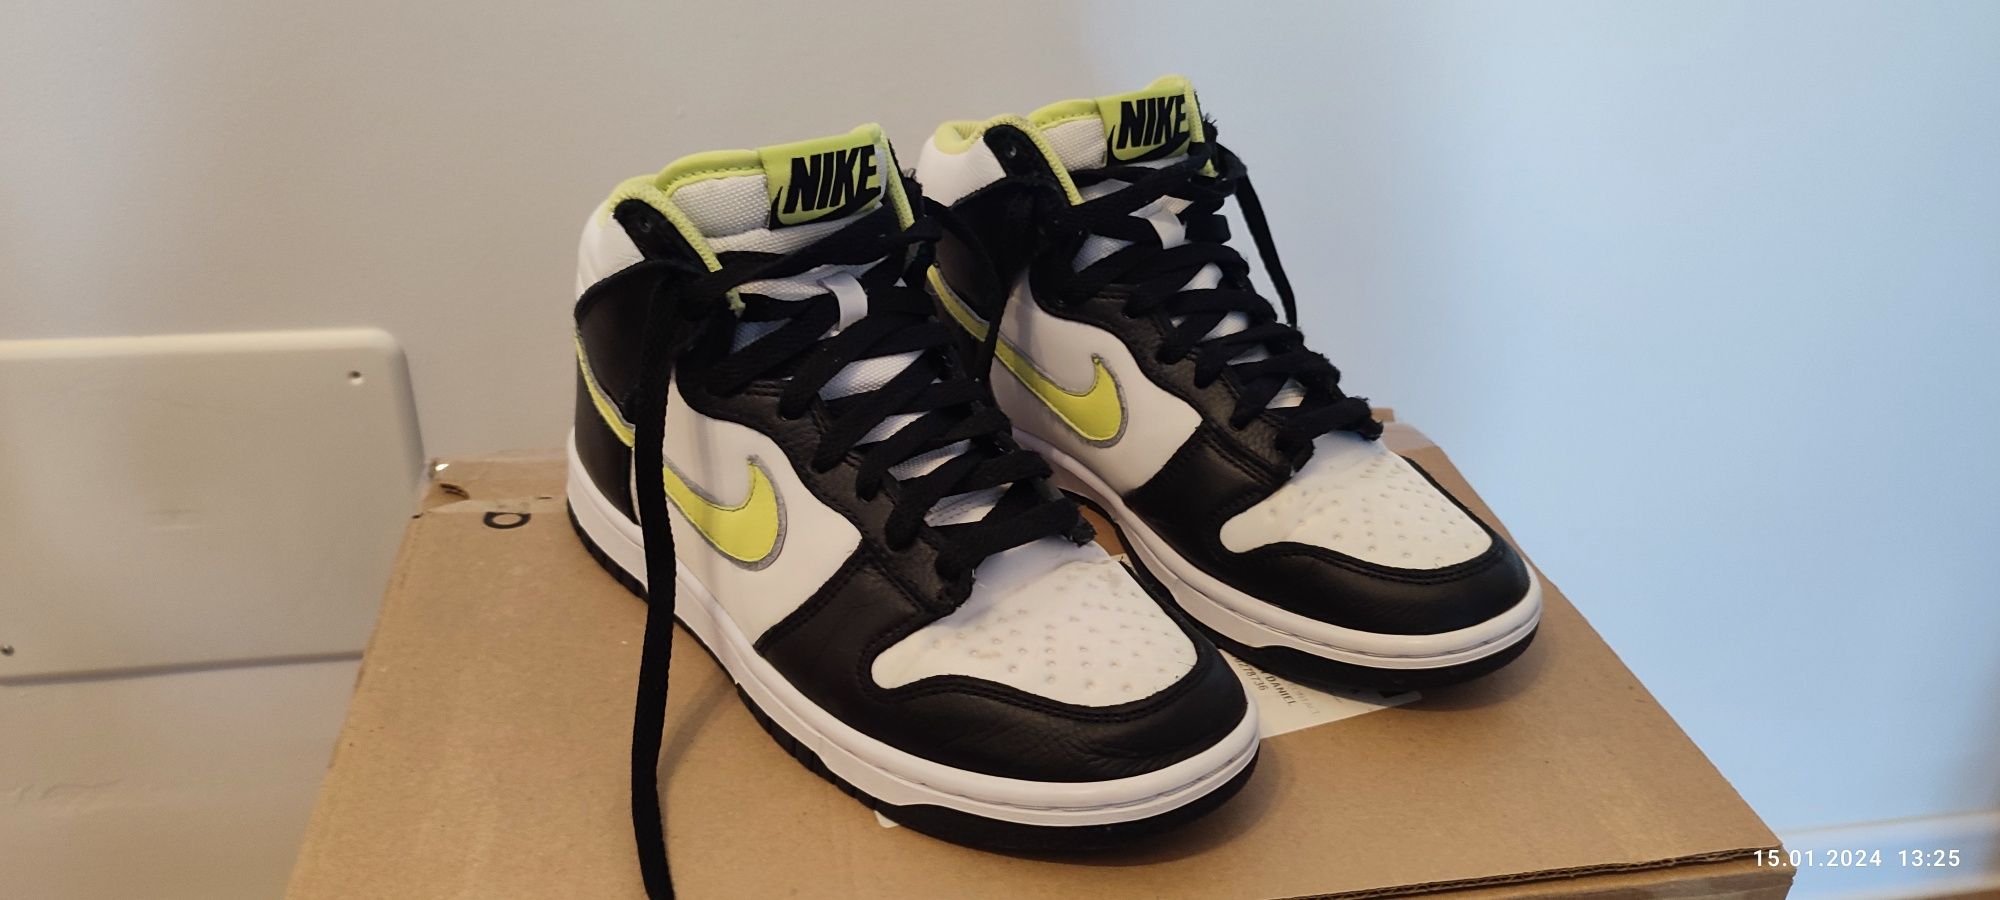 Nike Dunk High Custom Women's Shoe